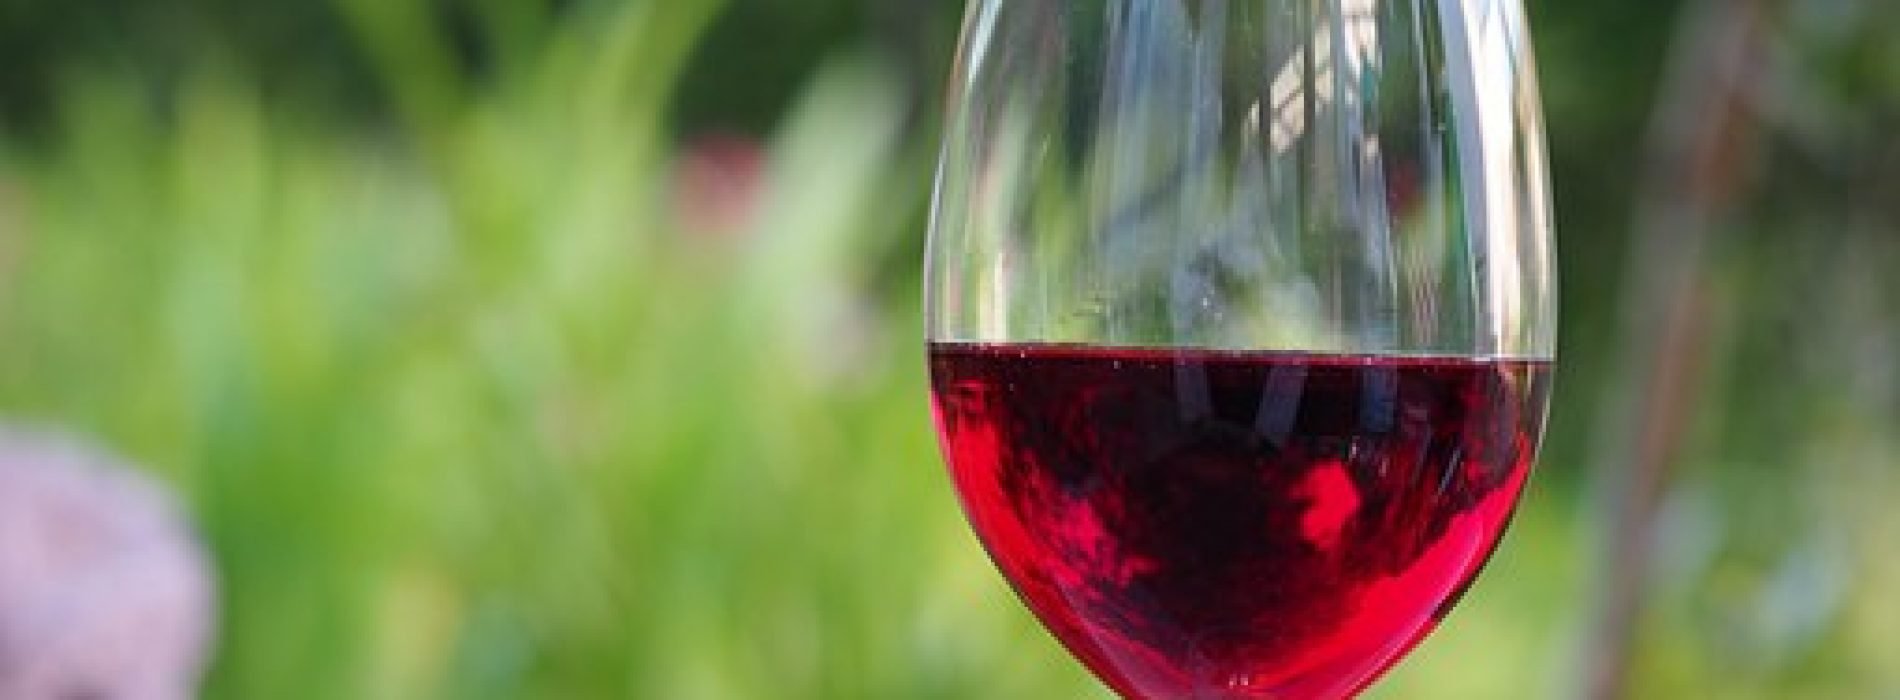 CONFAGRI e FENADEGAS debatem “O Sector do Vinho no Pós-Covid”